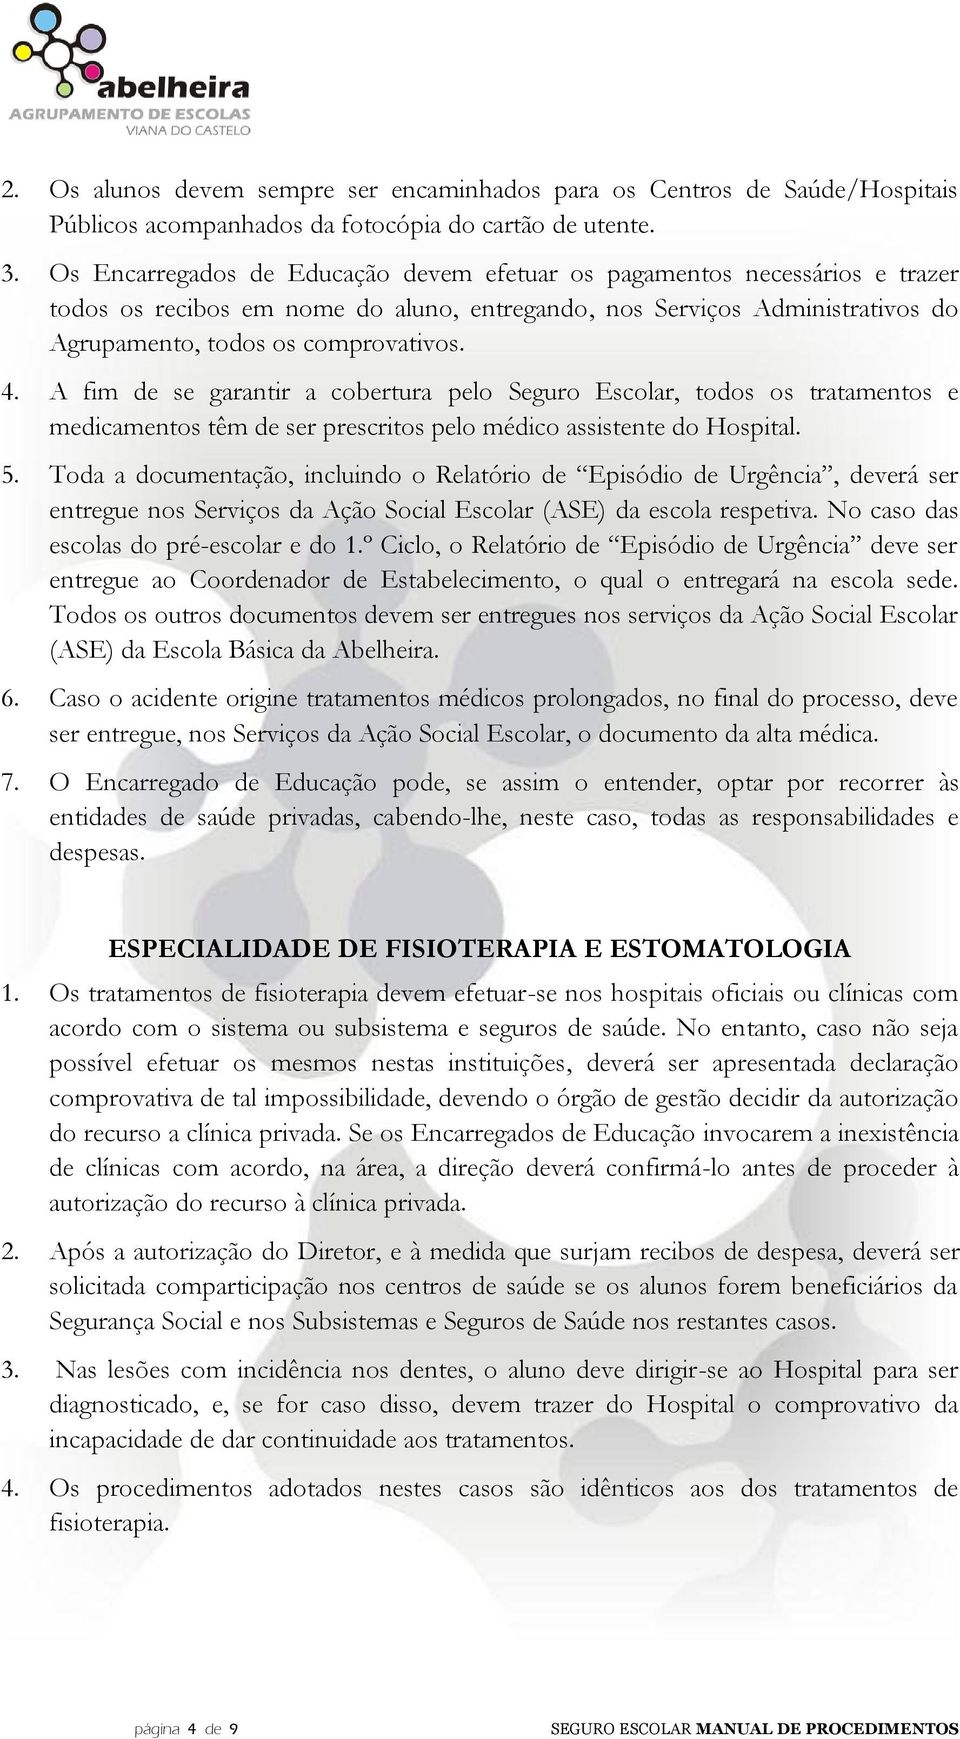 MANUAL DE PROCEDIMENTOS - PDF Download grátis